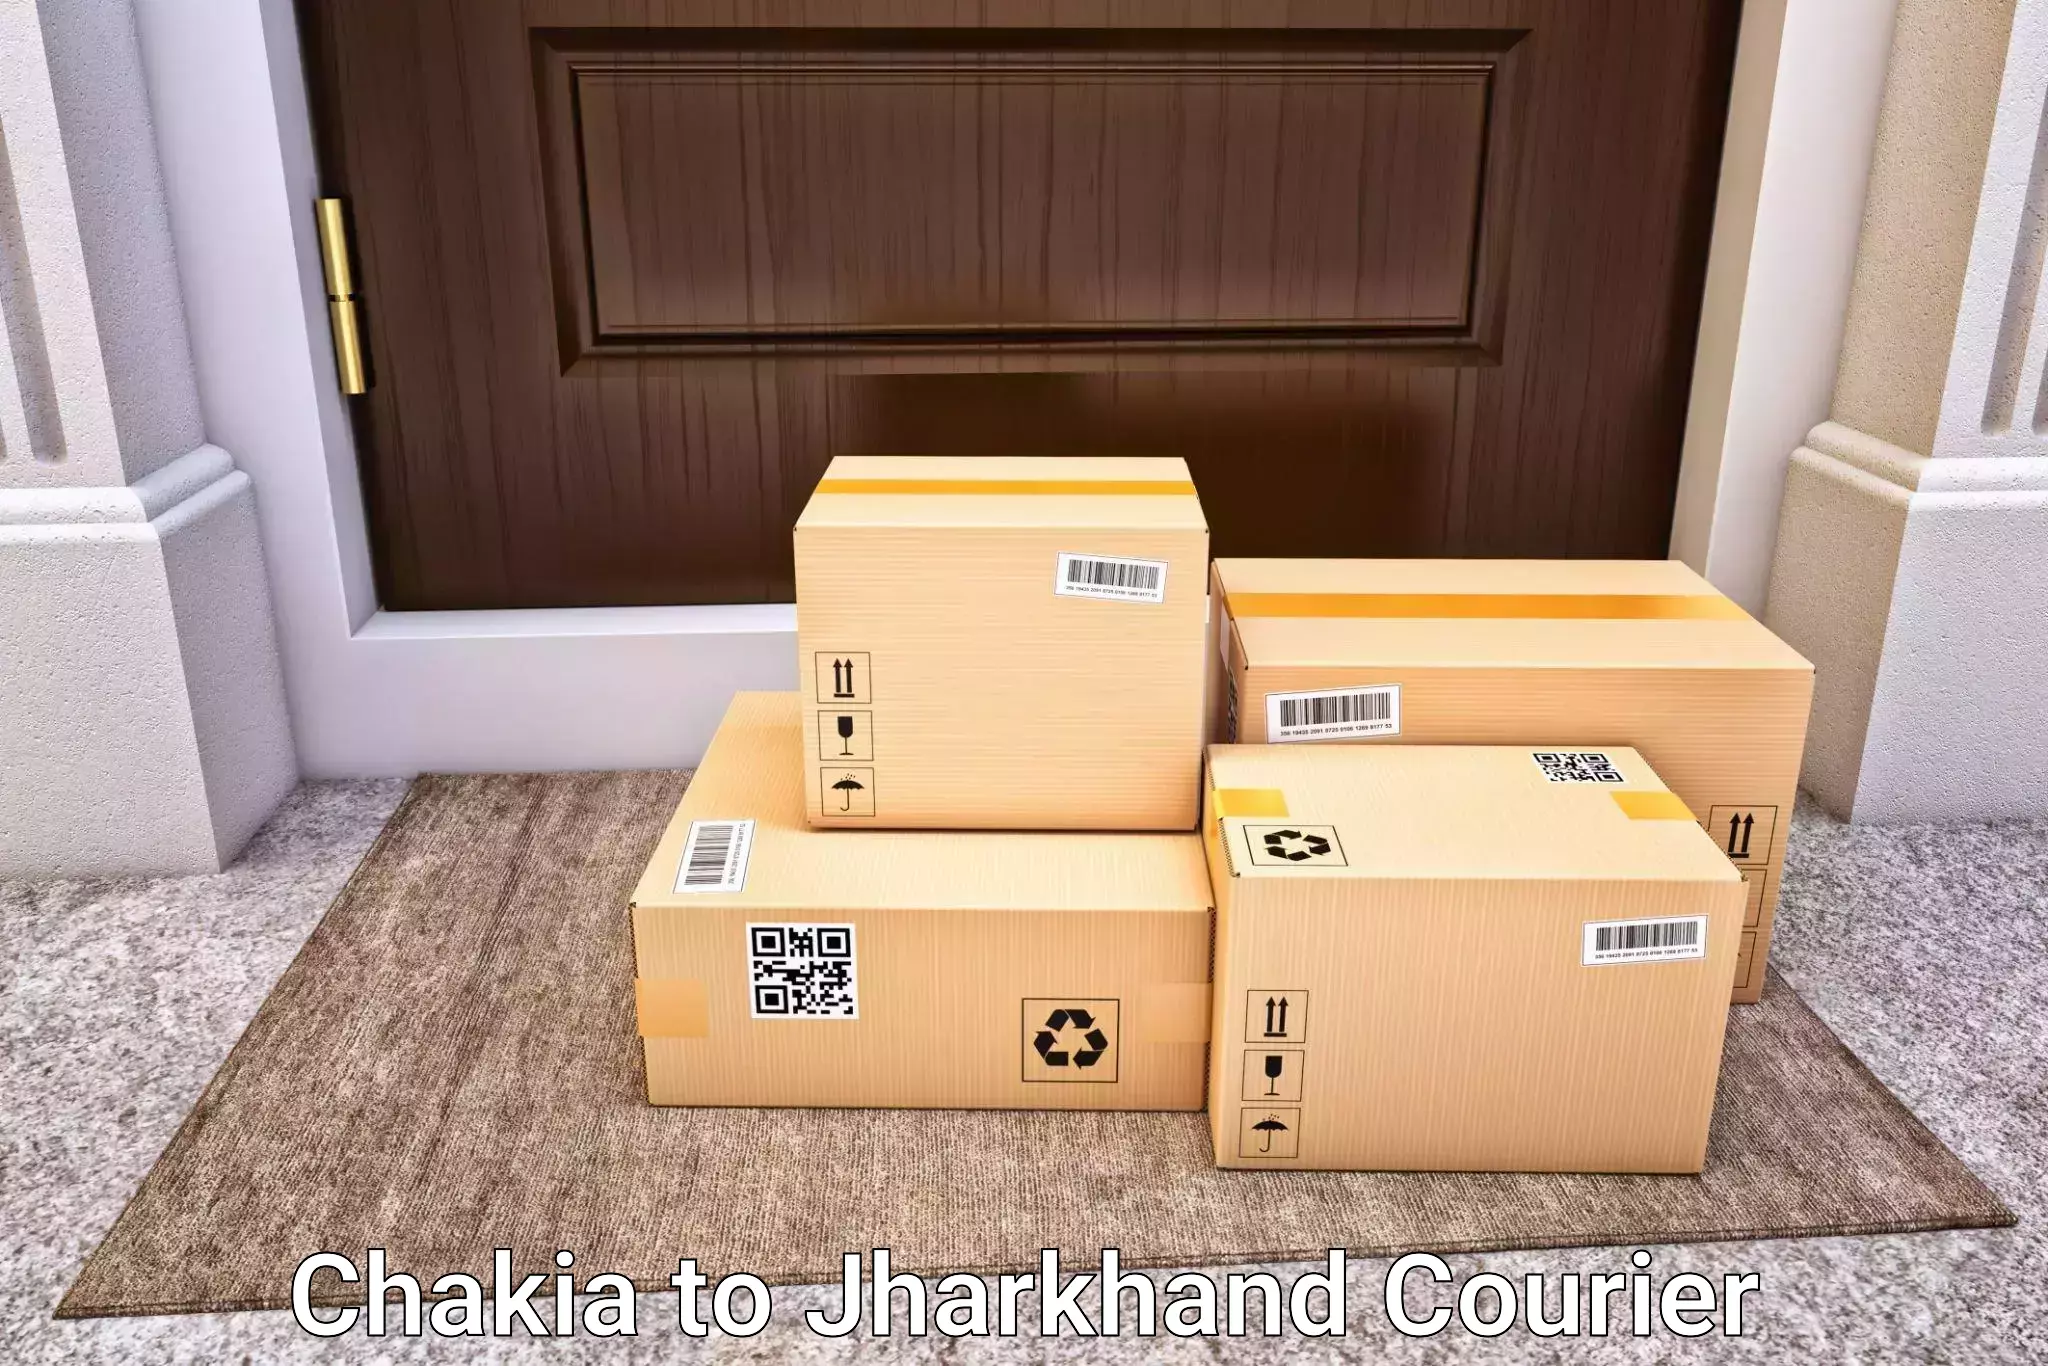 Door-to-door baggage service Chakia to Koderma